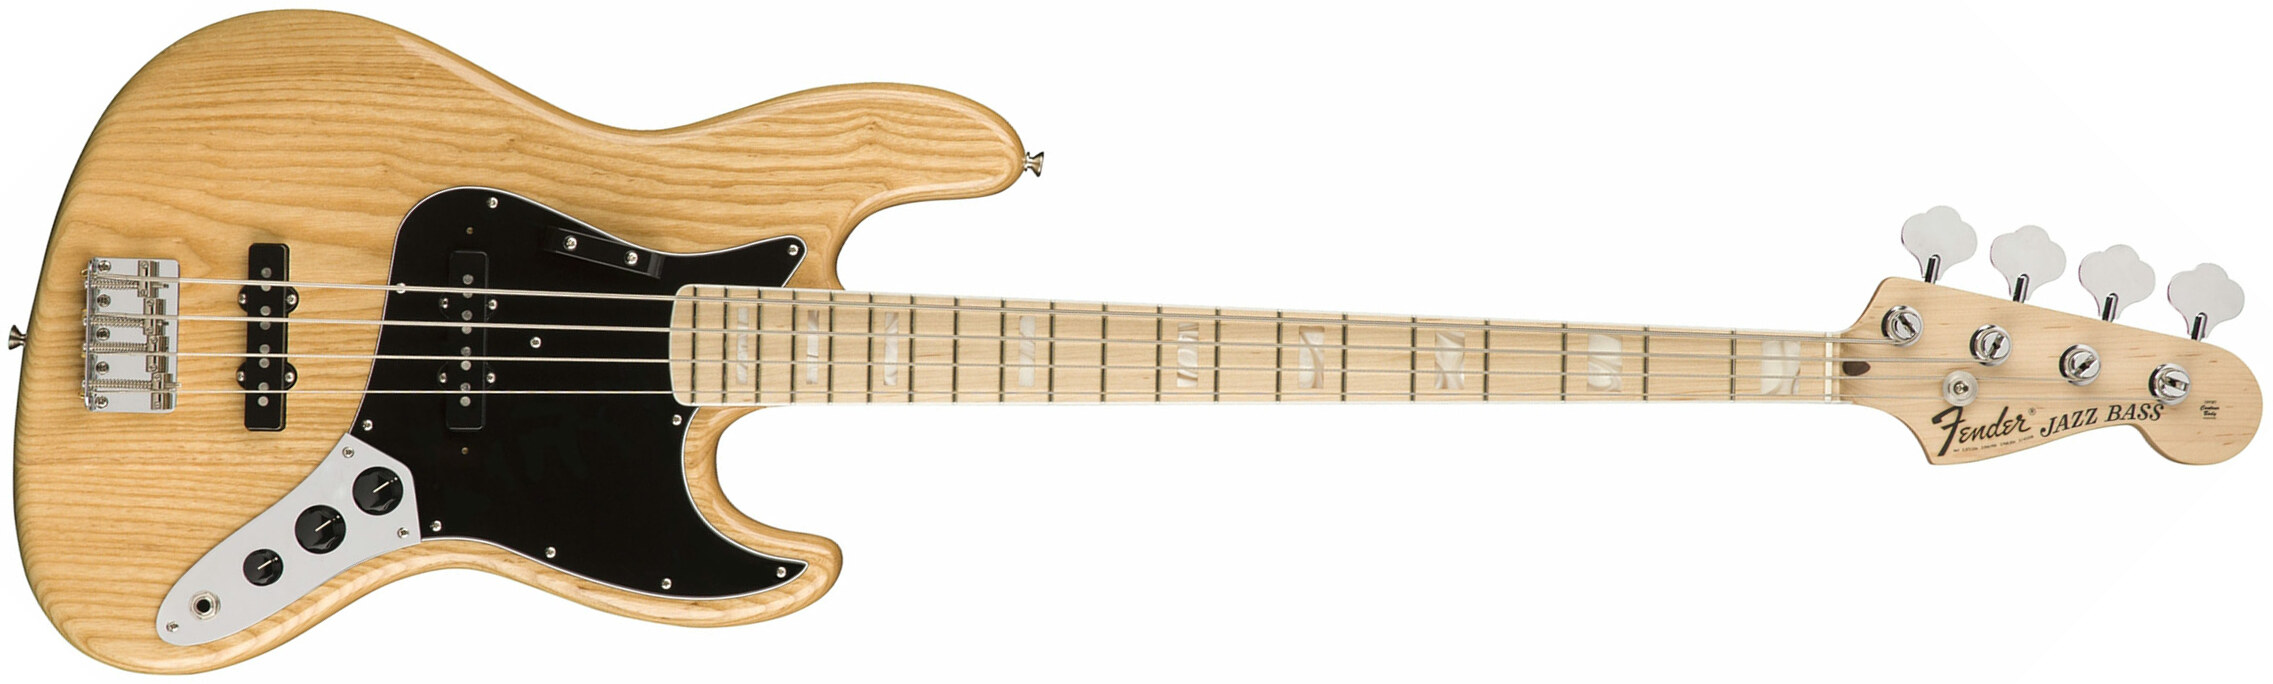 Fender Jazz Bass '70s American Original Usa Mn - Natural - Bajo eléctrico de cuerpo sólido - Main picture